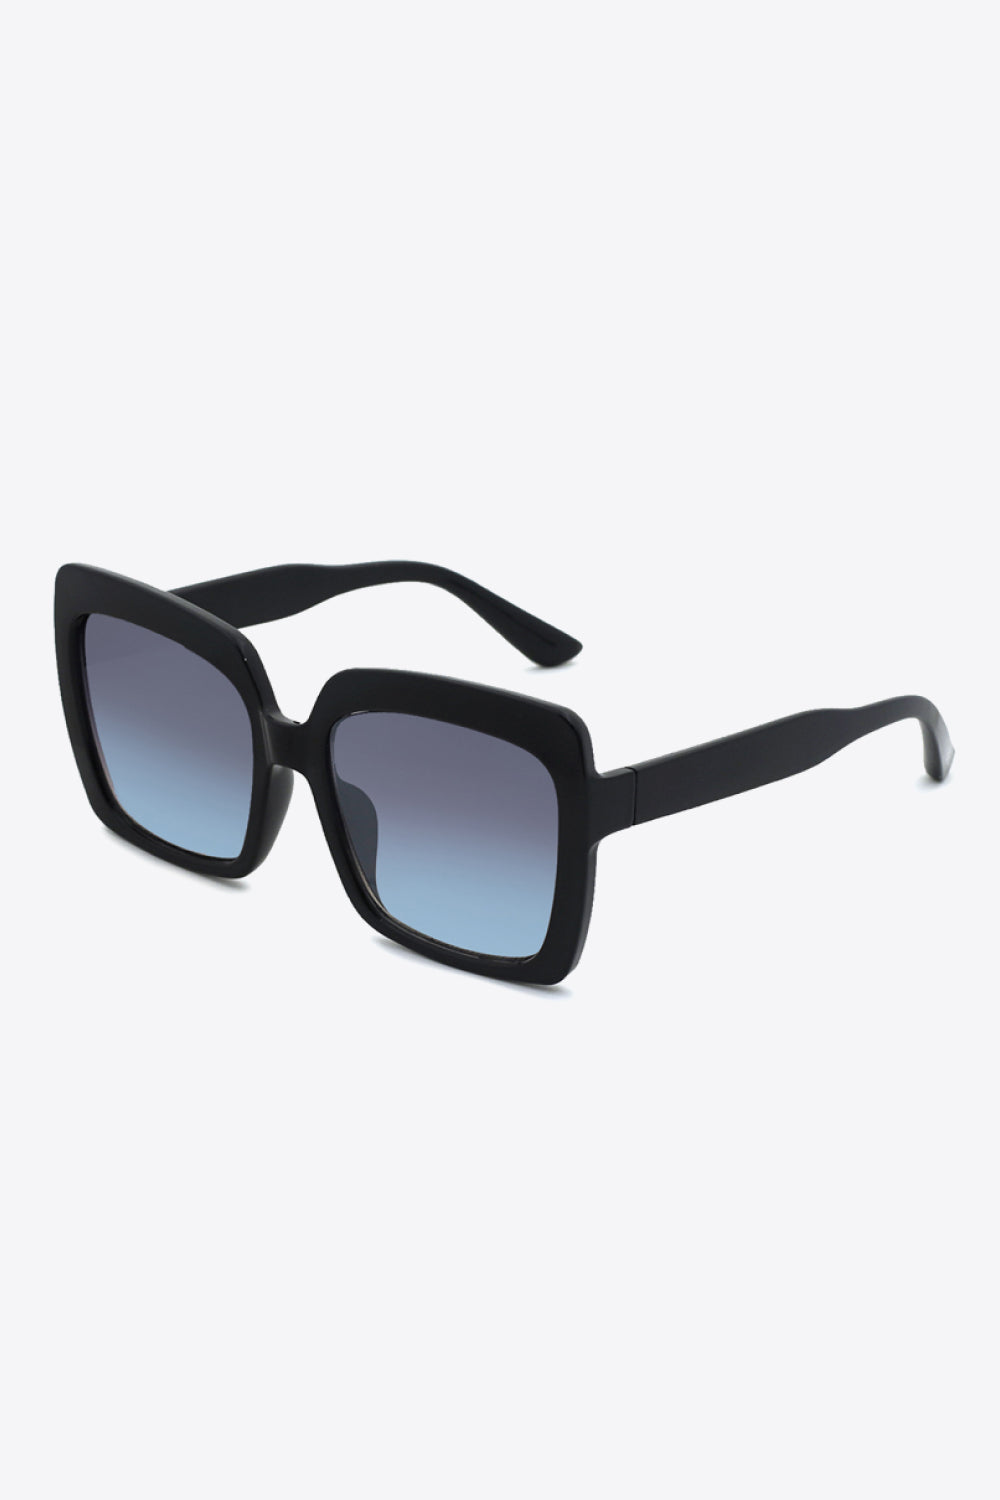 Traci K Collection Square Full Rim Sunglasses